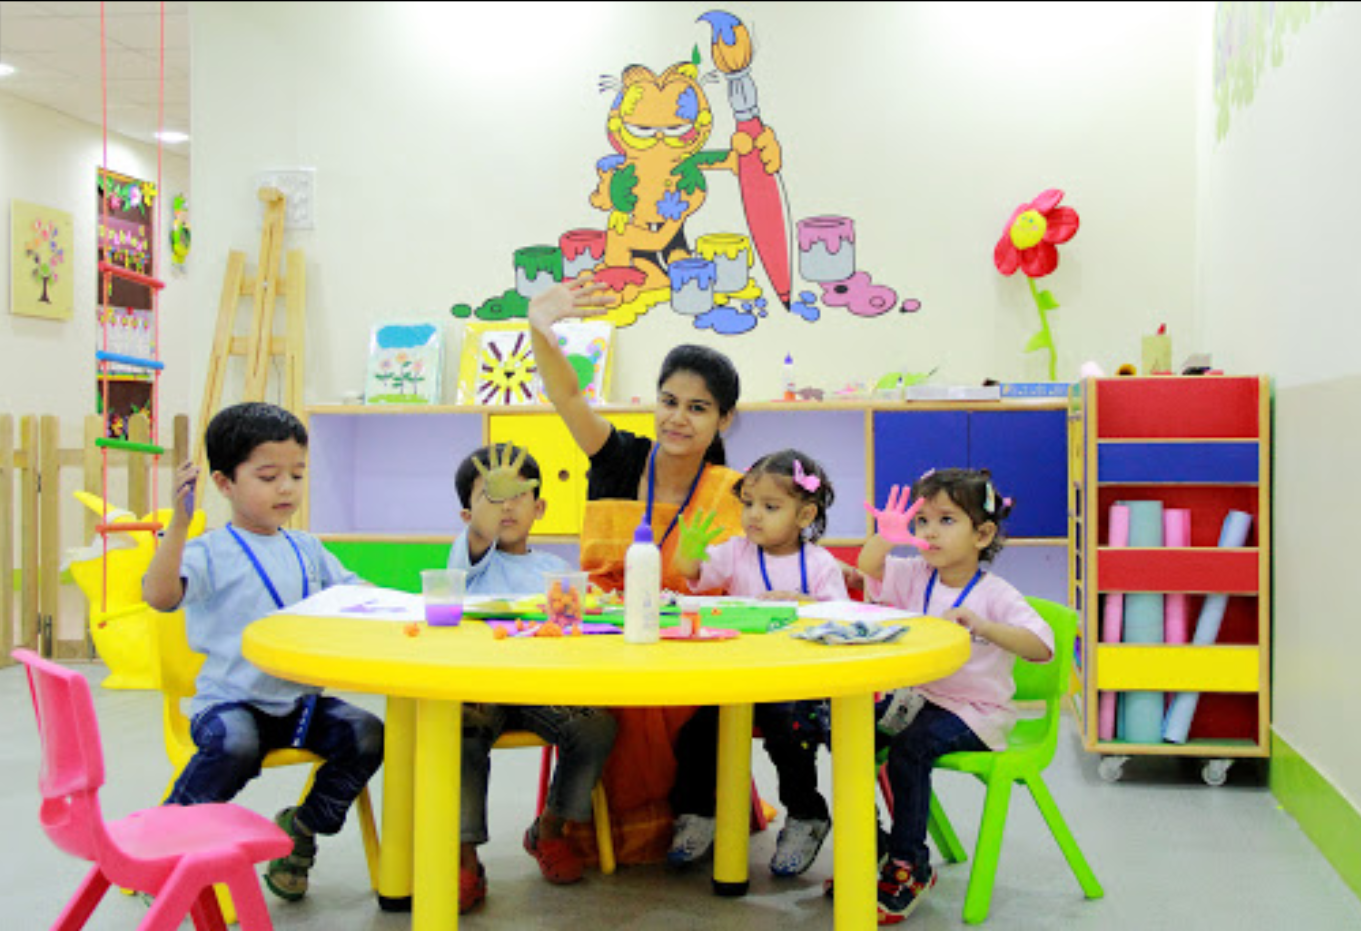 Top 10 Preschools in Delhi Ncr | Best Playgroups in Delhi